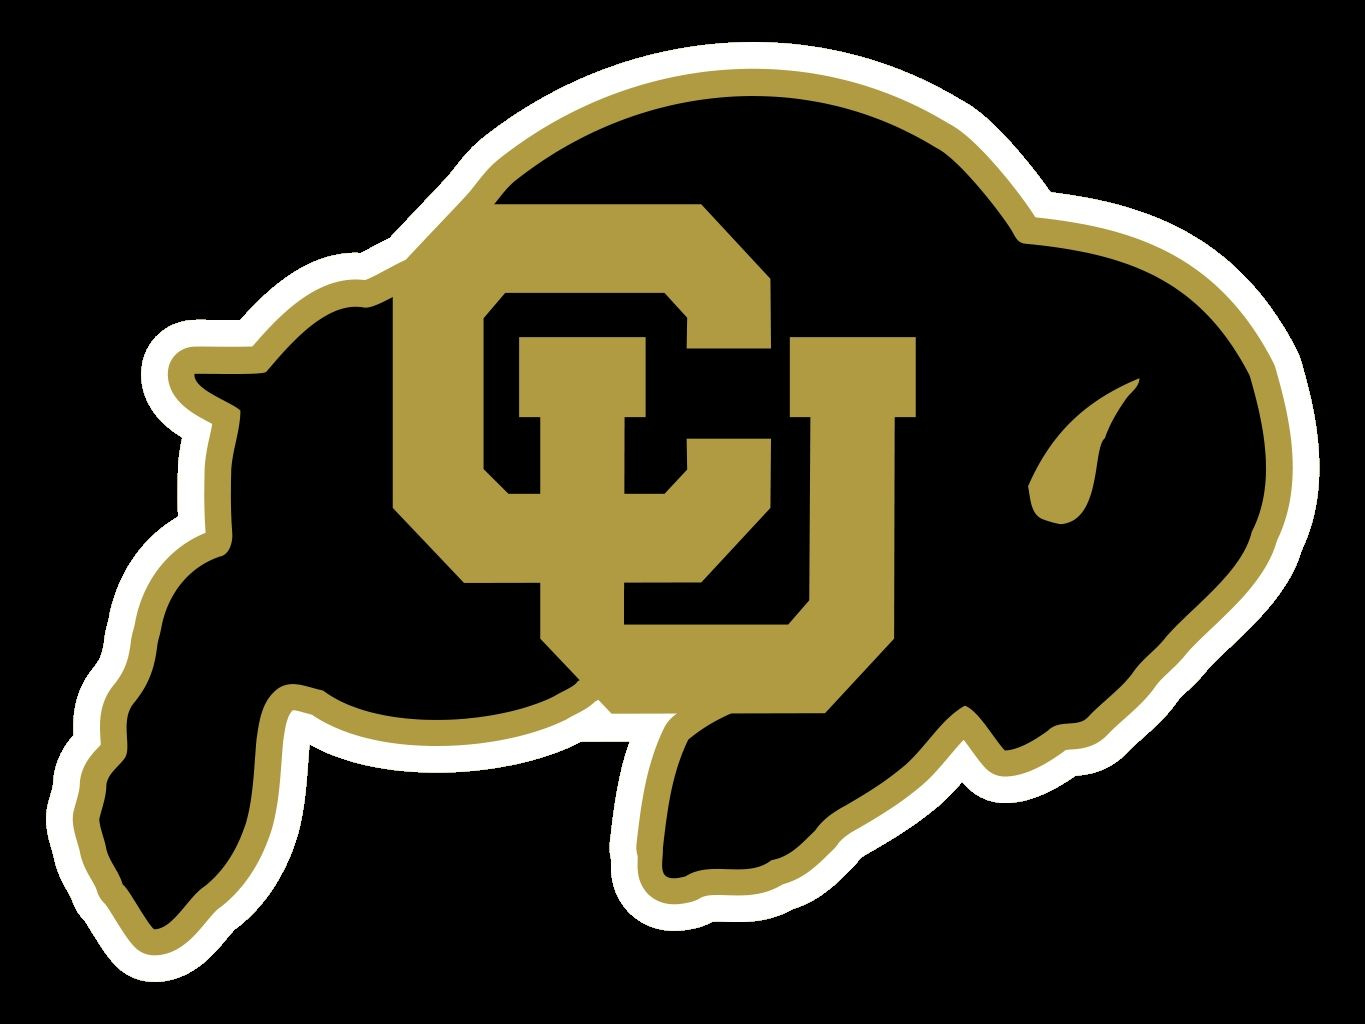 Colorado buffaloes Logos